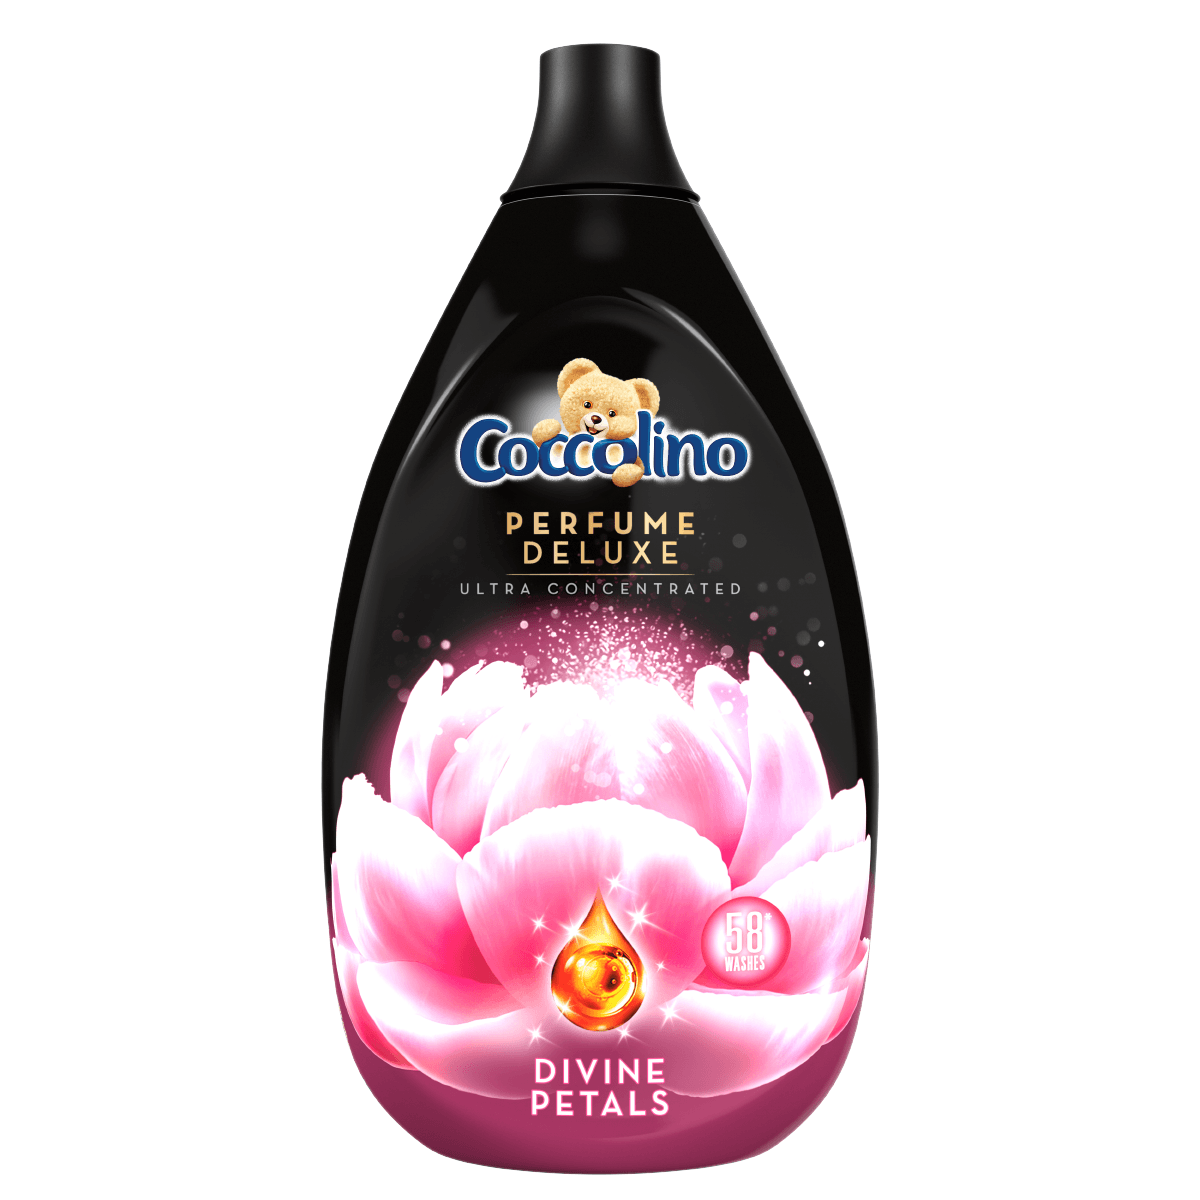 Coccolino Perfume Deluxe 870ml rinse concentrate - Divine Petals